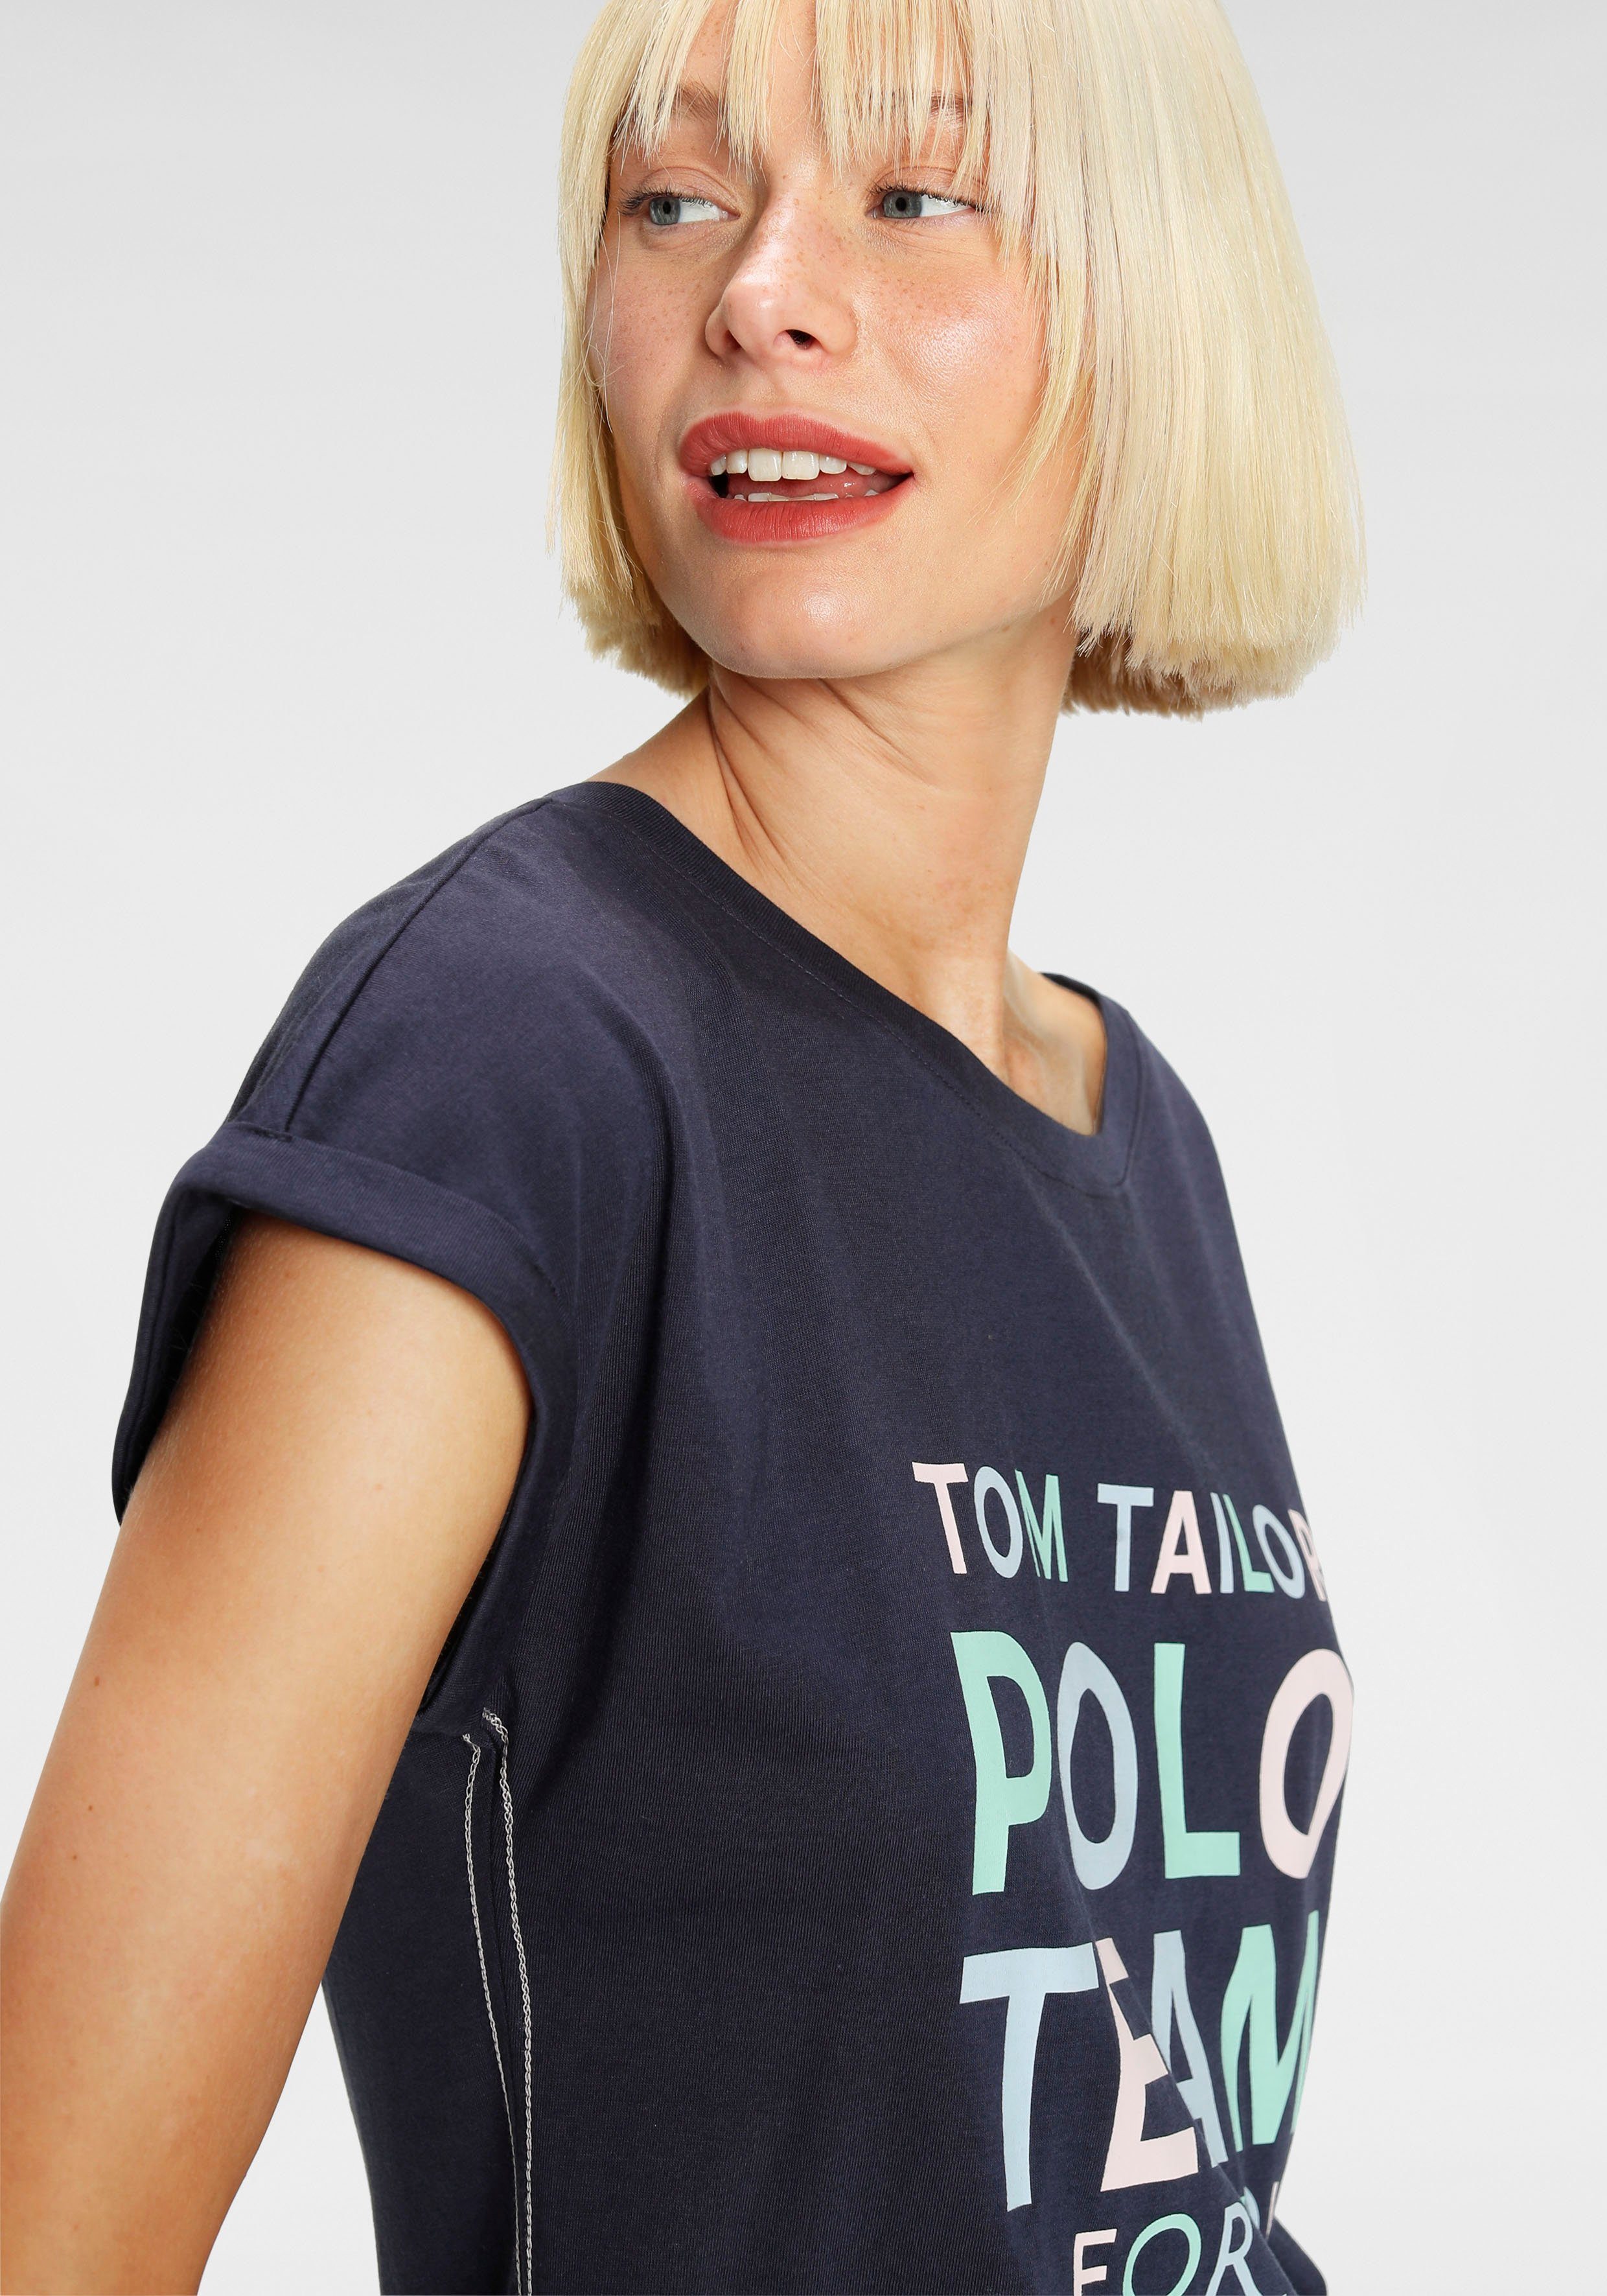 Polo TAILOR TOM Print-Shirt großem farbenfrohen Team Logo-Print